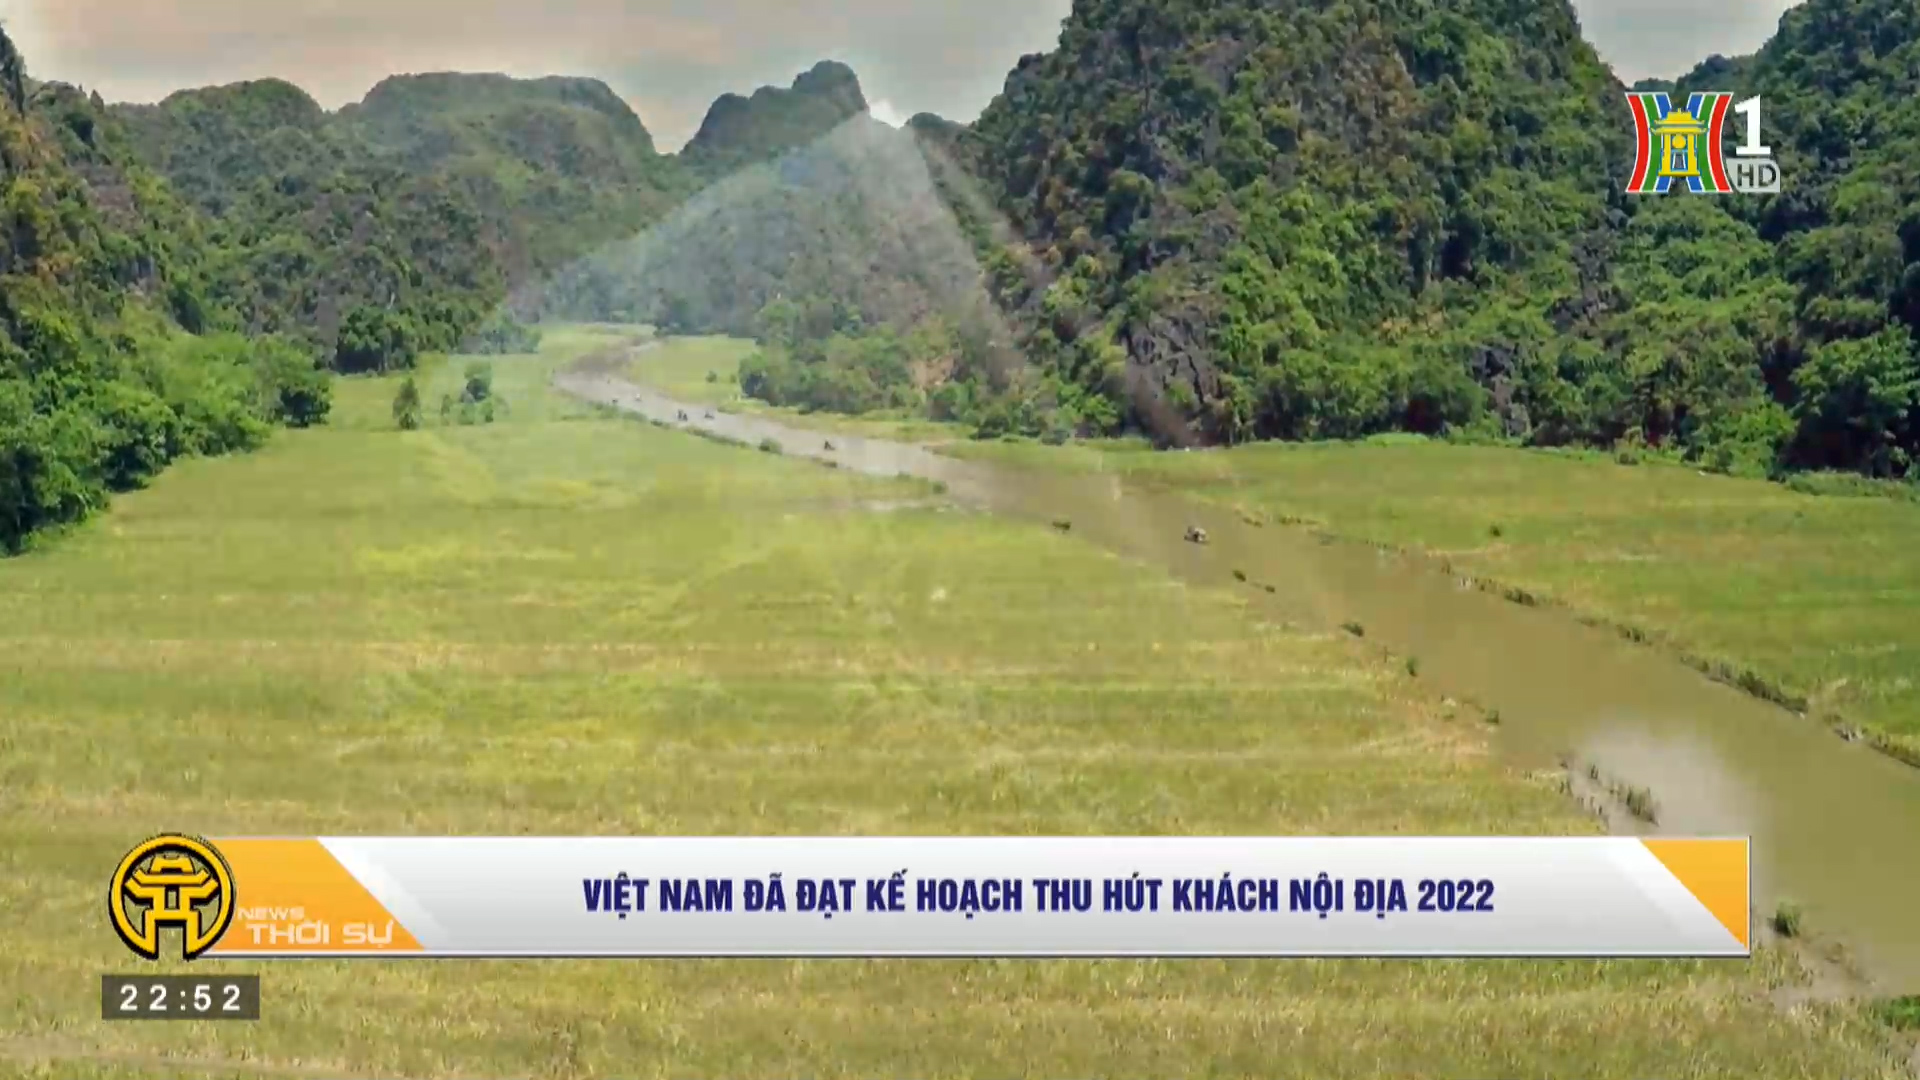 Việt Nam đã đạt kế hoạch thu hút khách nội địa 2022